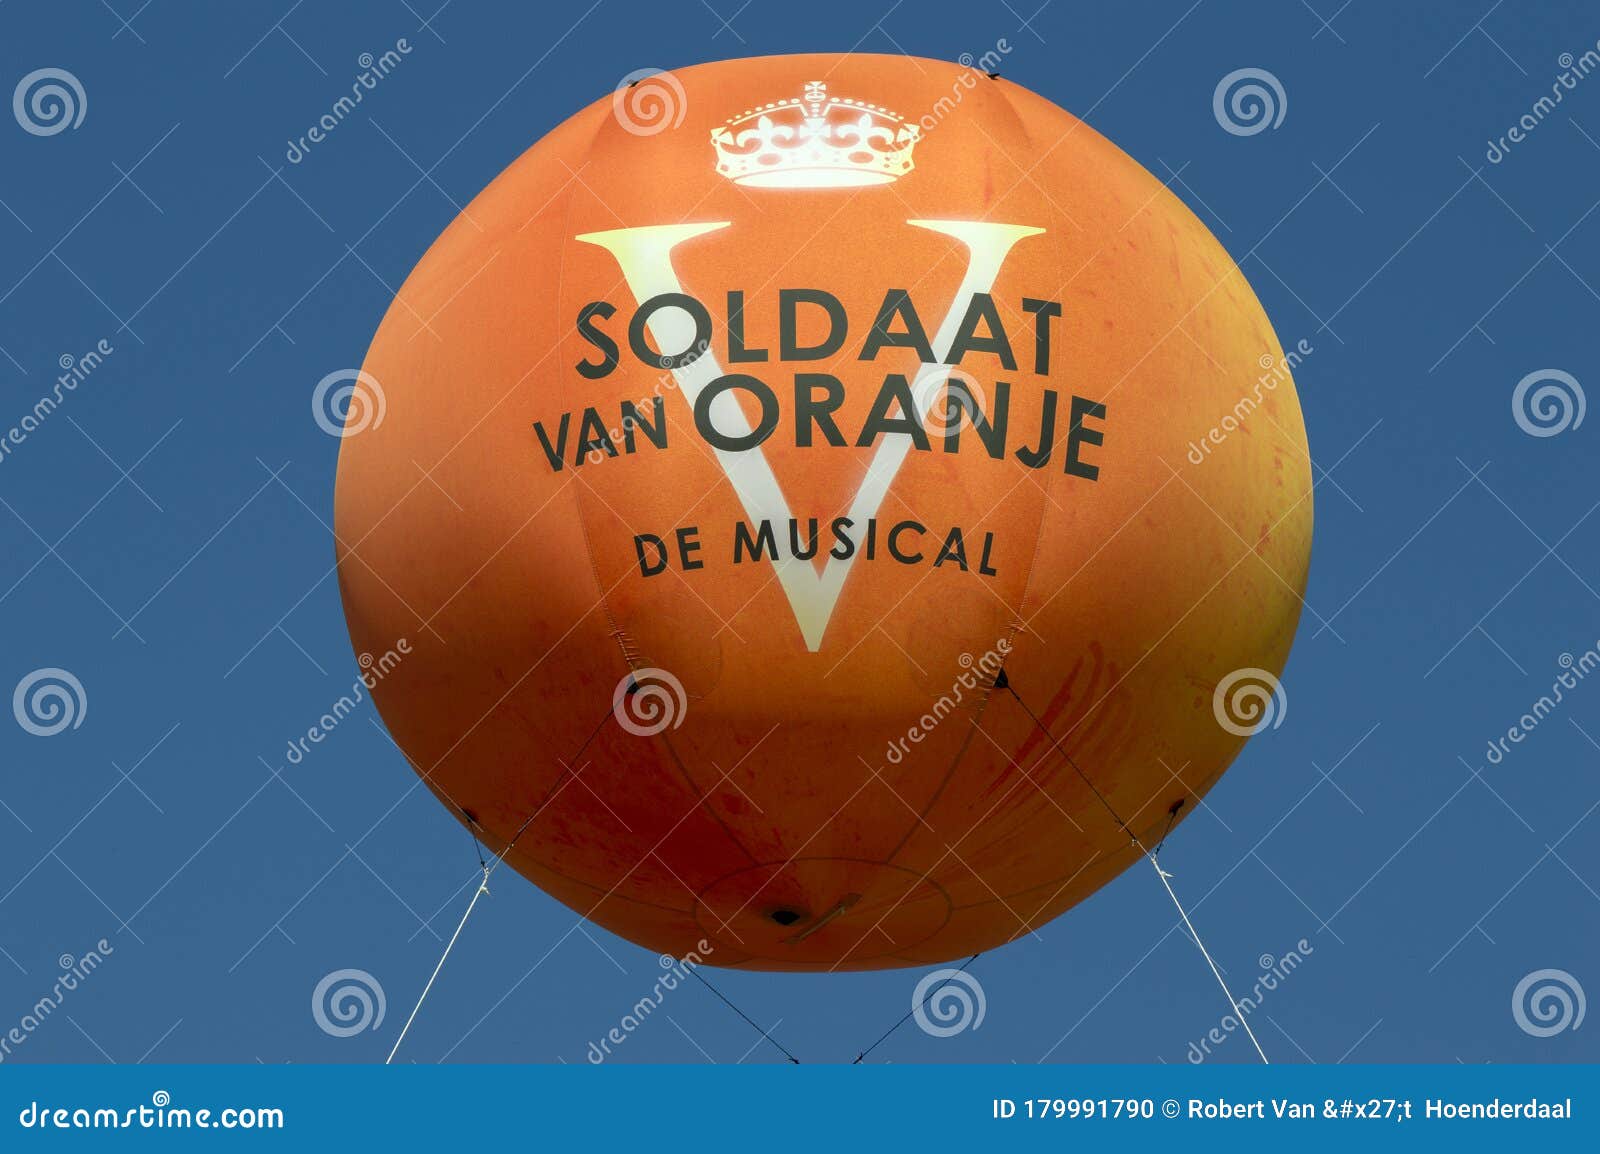 Systematisch Haalbaarheid Occlusie Ballon Uit De Muzikale Soldaat Van Oranje in Amsterdam, Nederland, 2019  Redactionele Afbeelding - Image of hemel, vlotter: 179991790